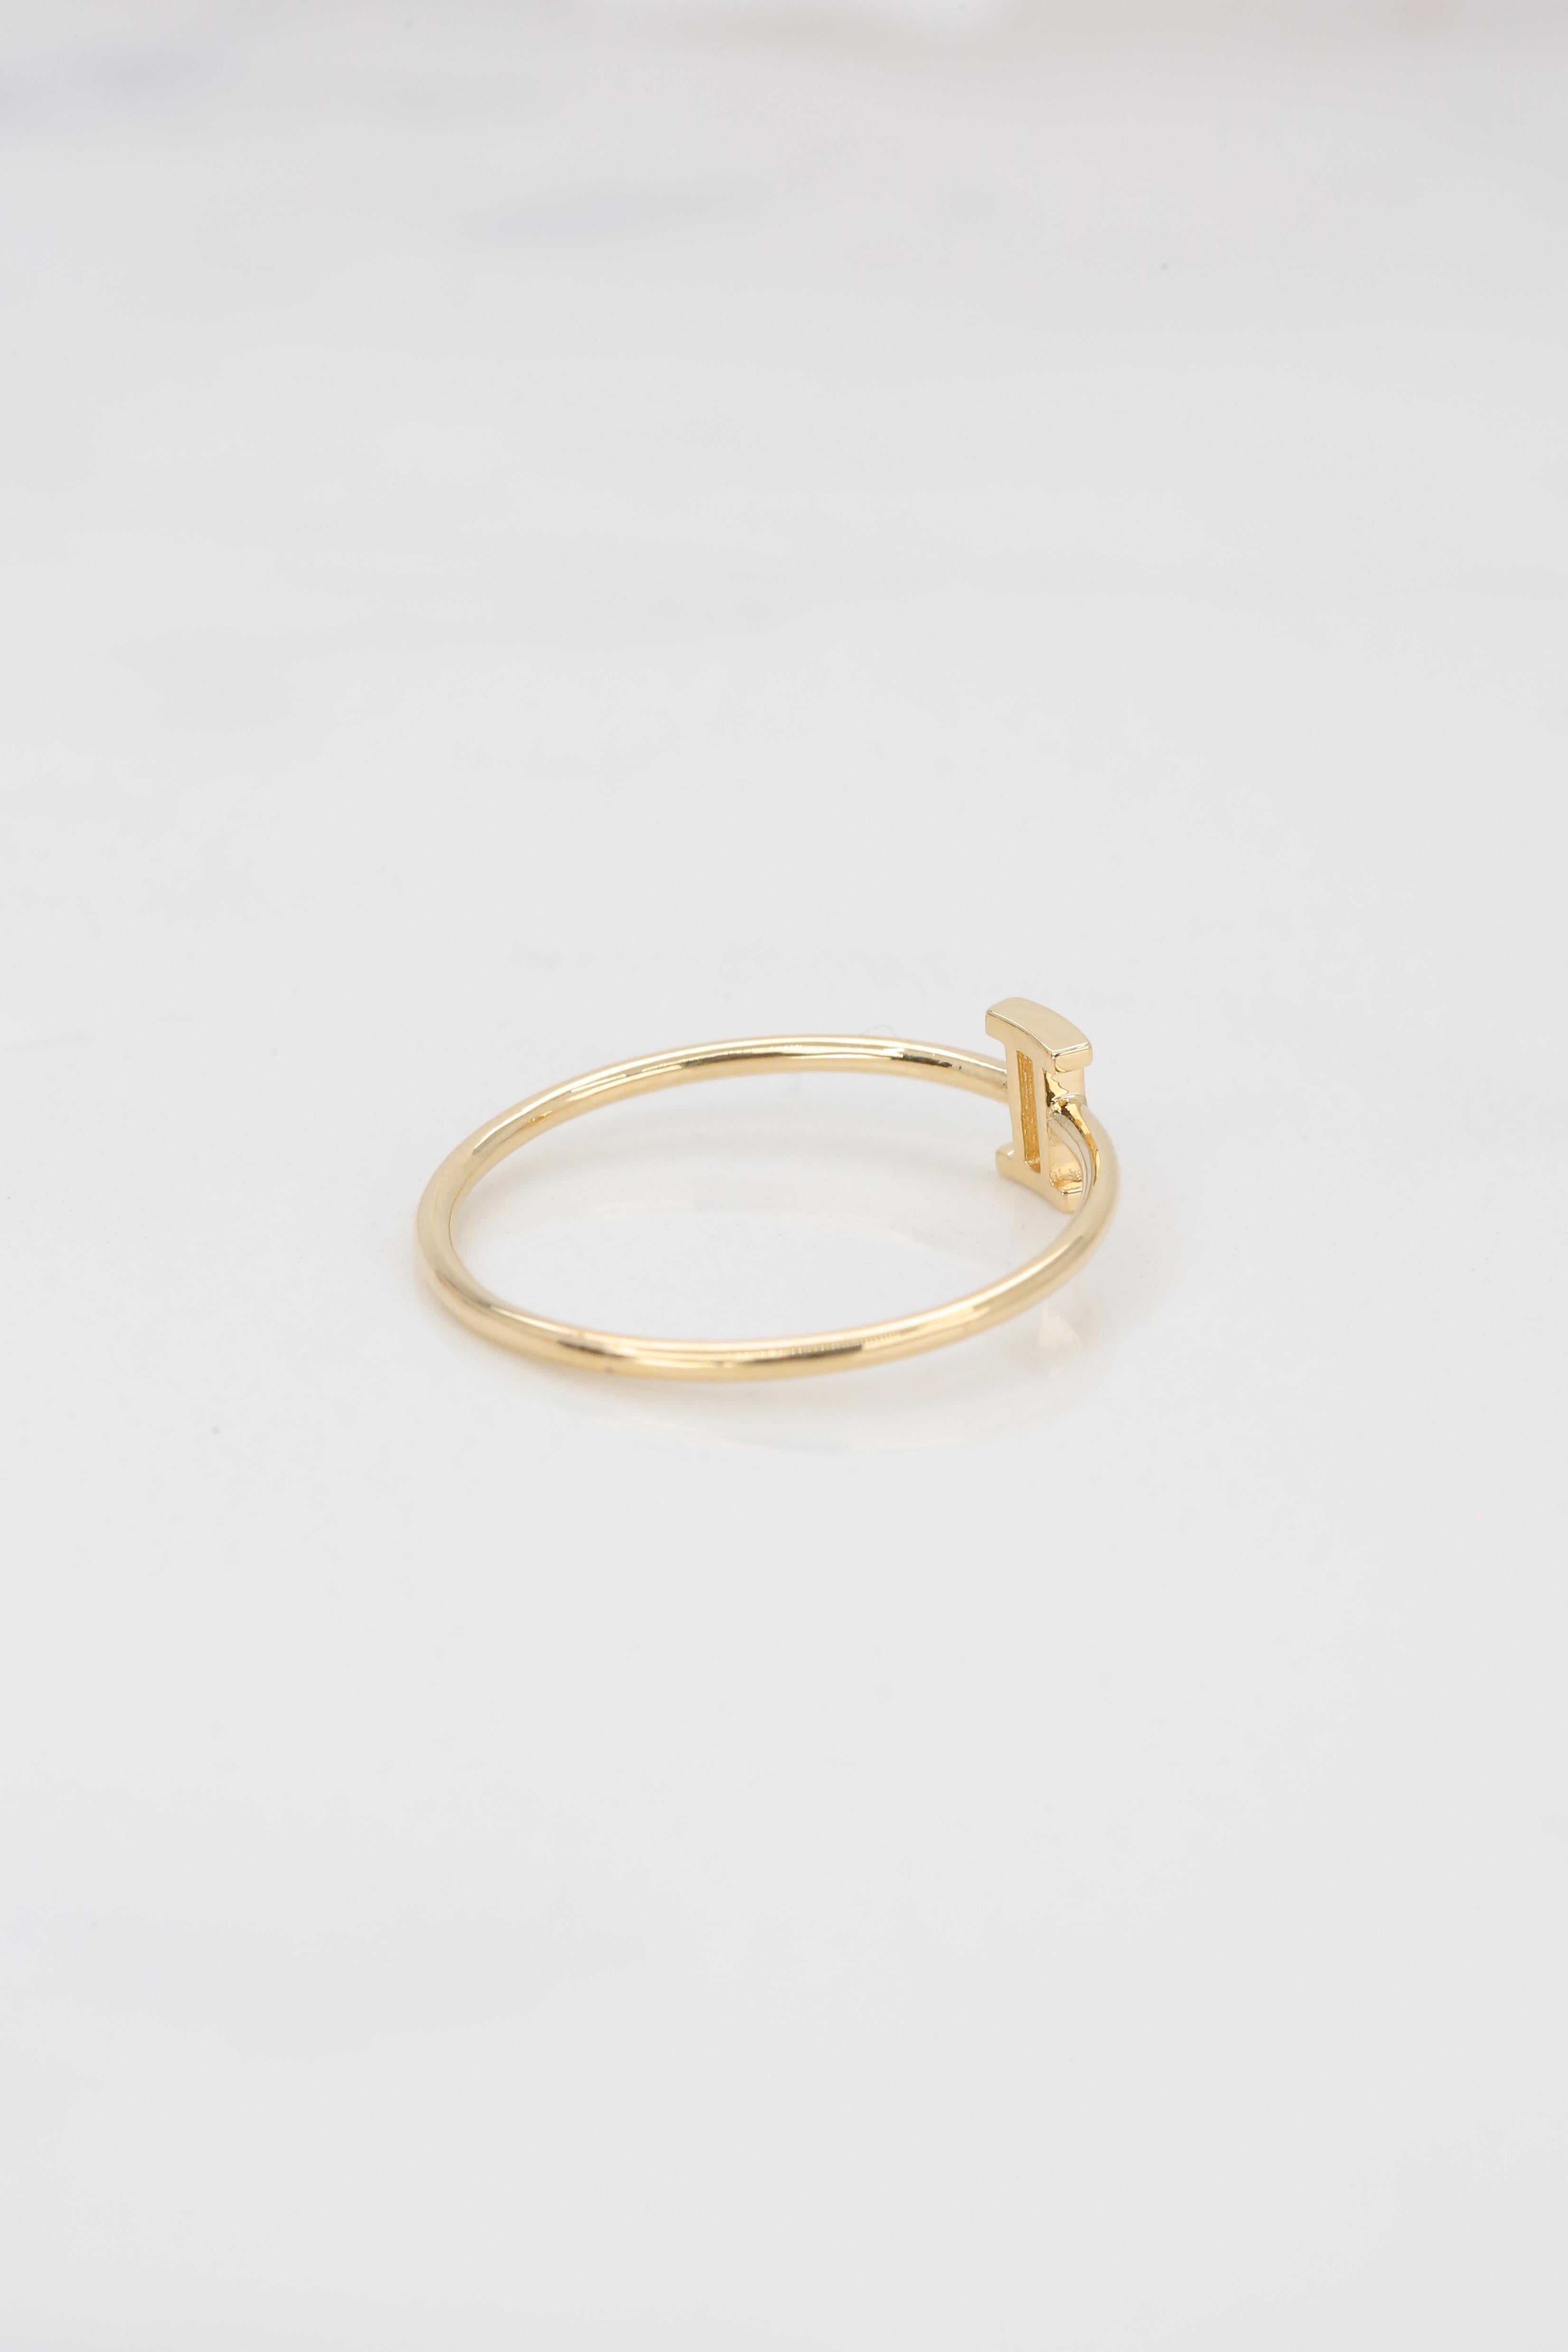 For Sale:  14K Gold Gemini Zodiac Ring, Gemini Sign Zodiac Ring 6